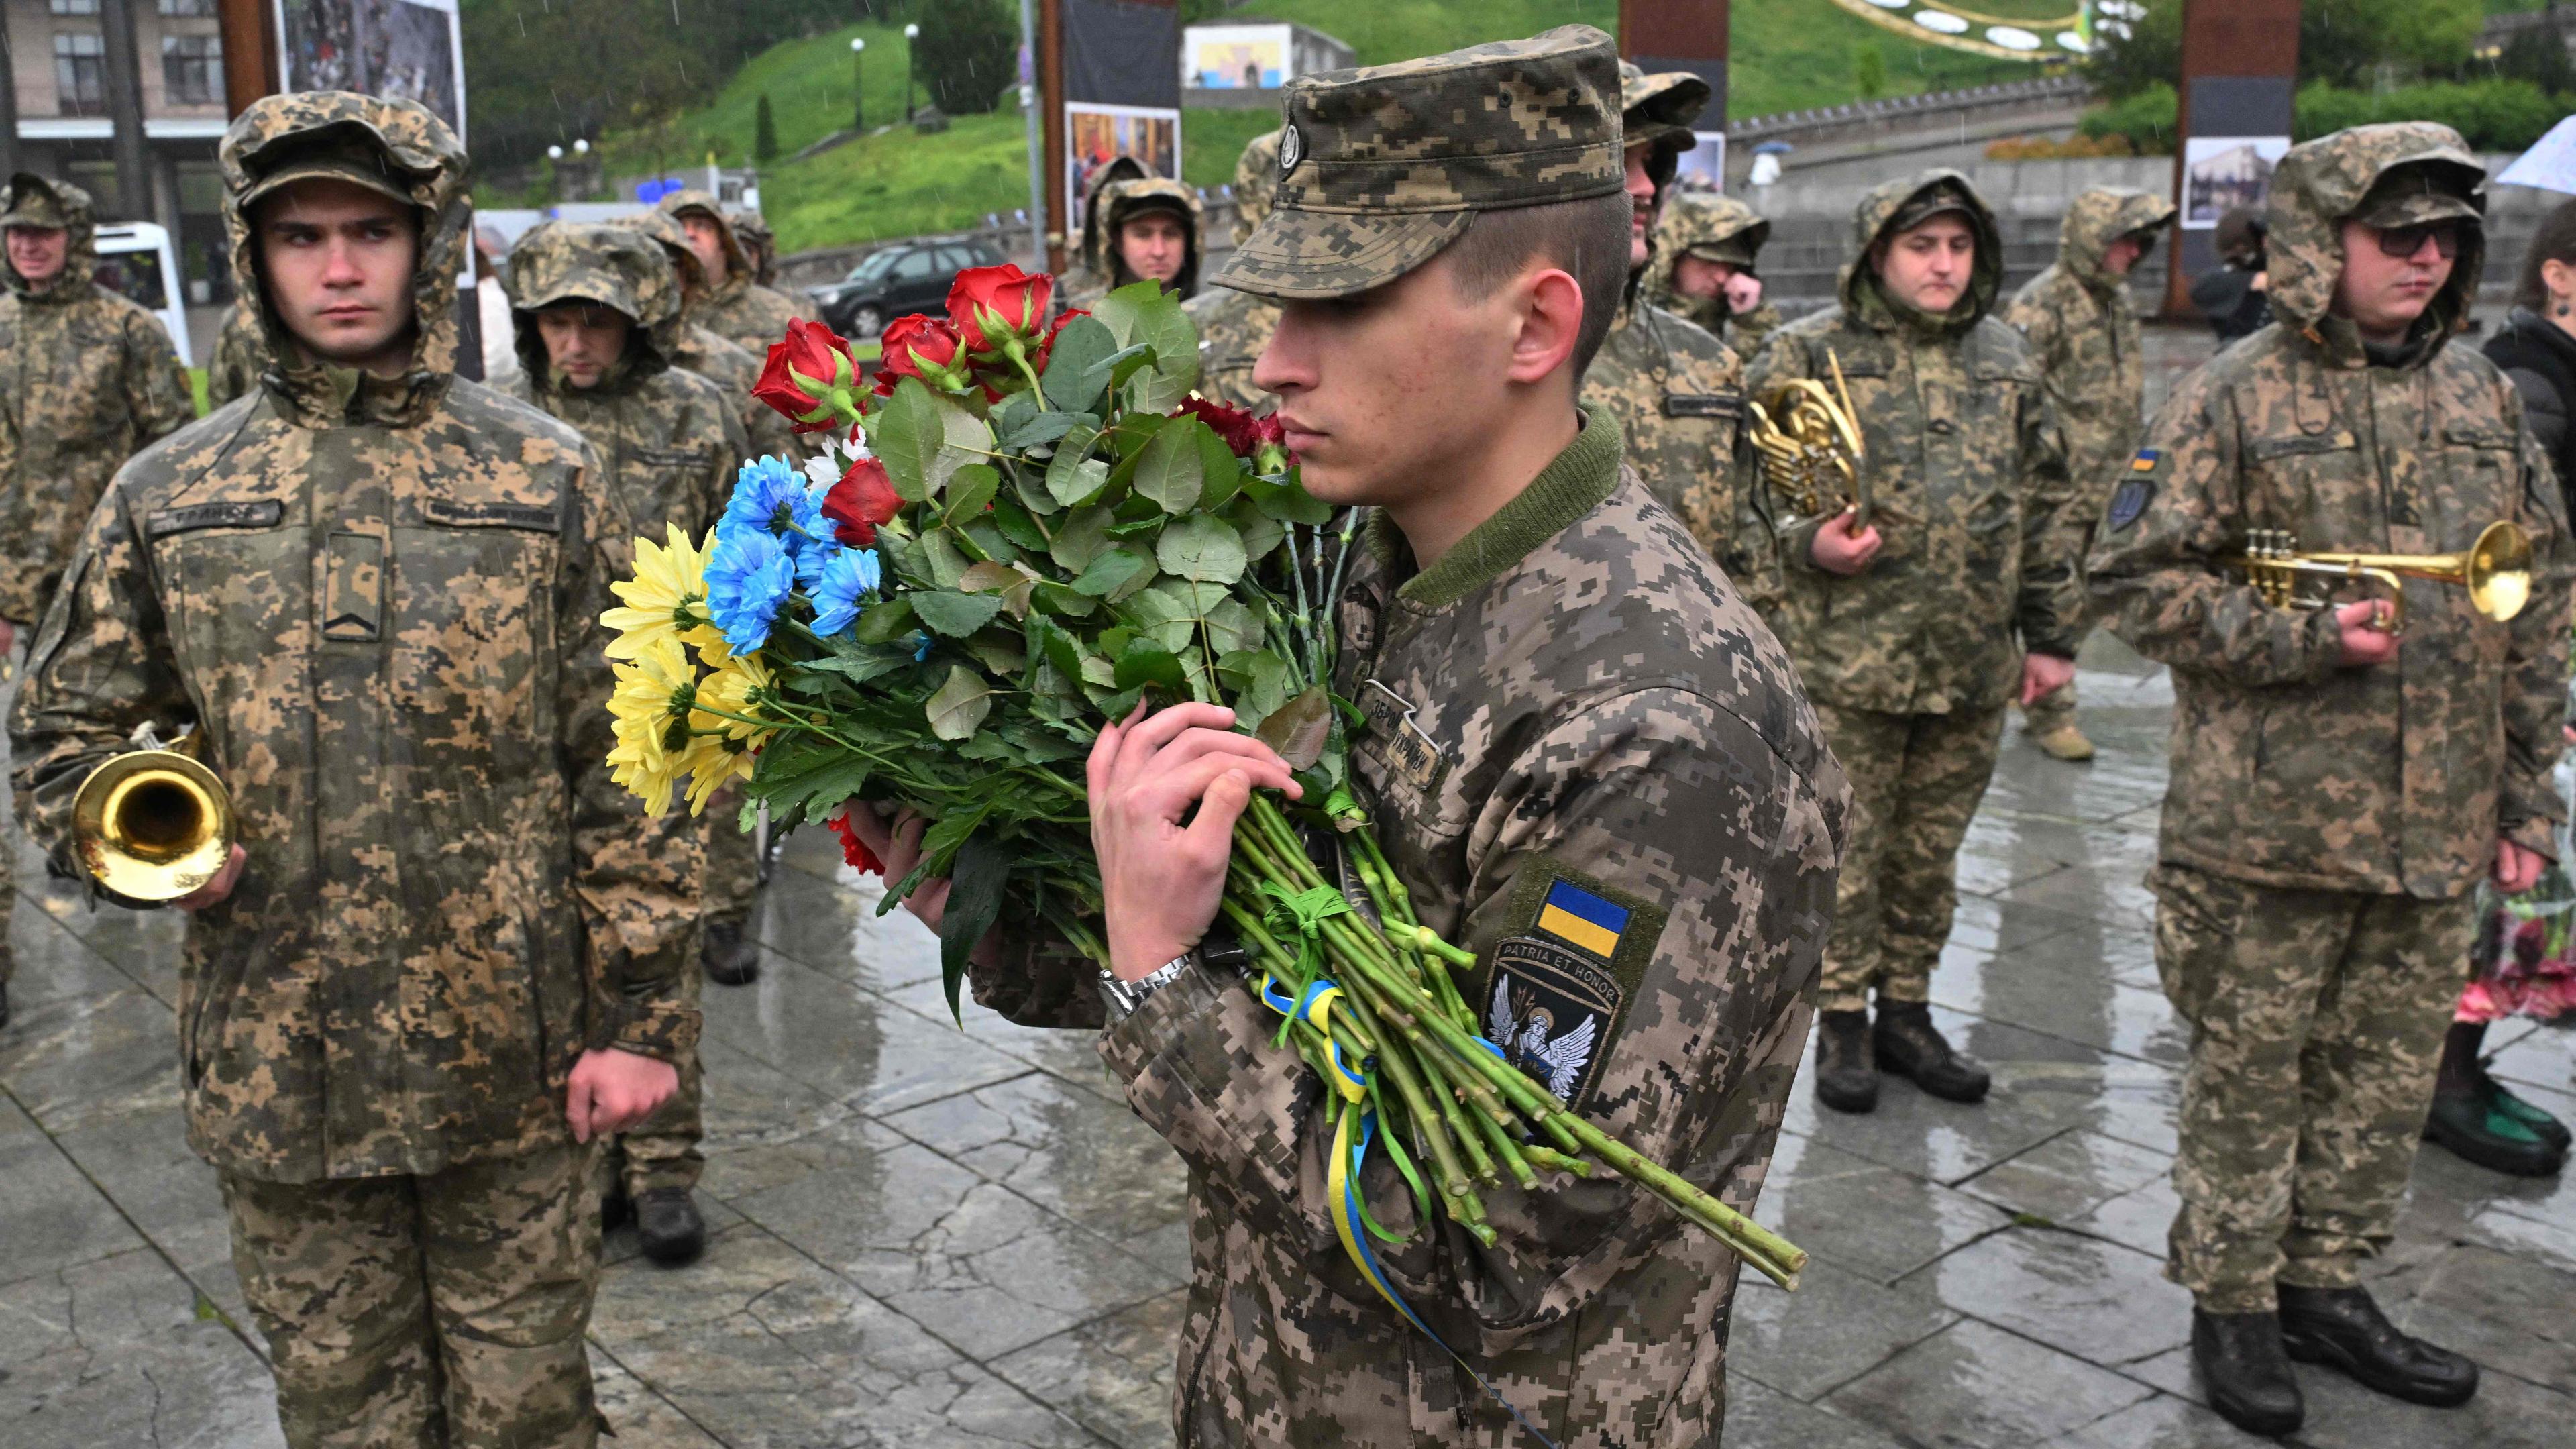 Trotz der US-Hilfe für die Ukraine ist die Lage an der Front äußerst angespannt. Das Foto zeigt ukrainische Soldaten, die einem gefallenen Kameraden die letzte Ehre erweisen.